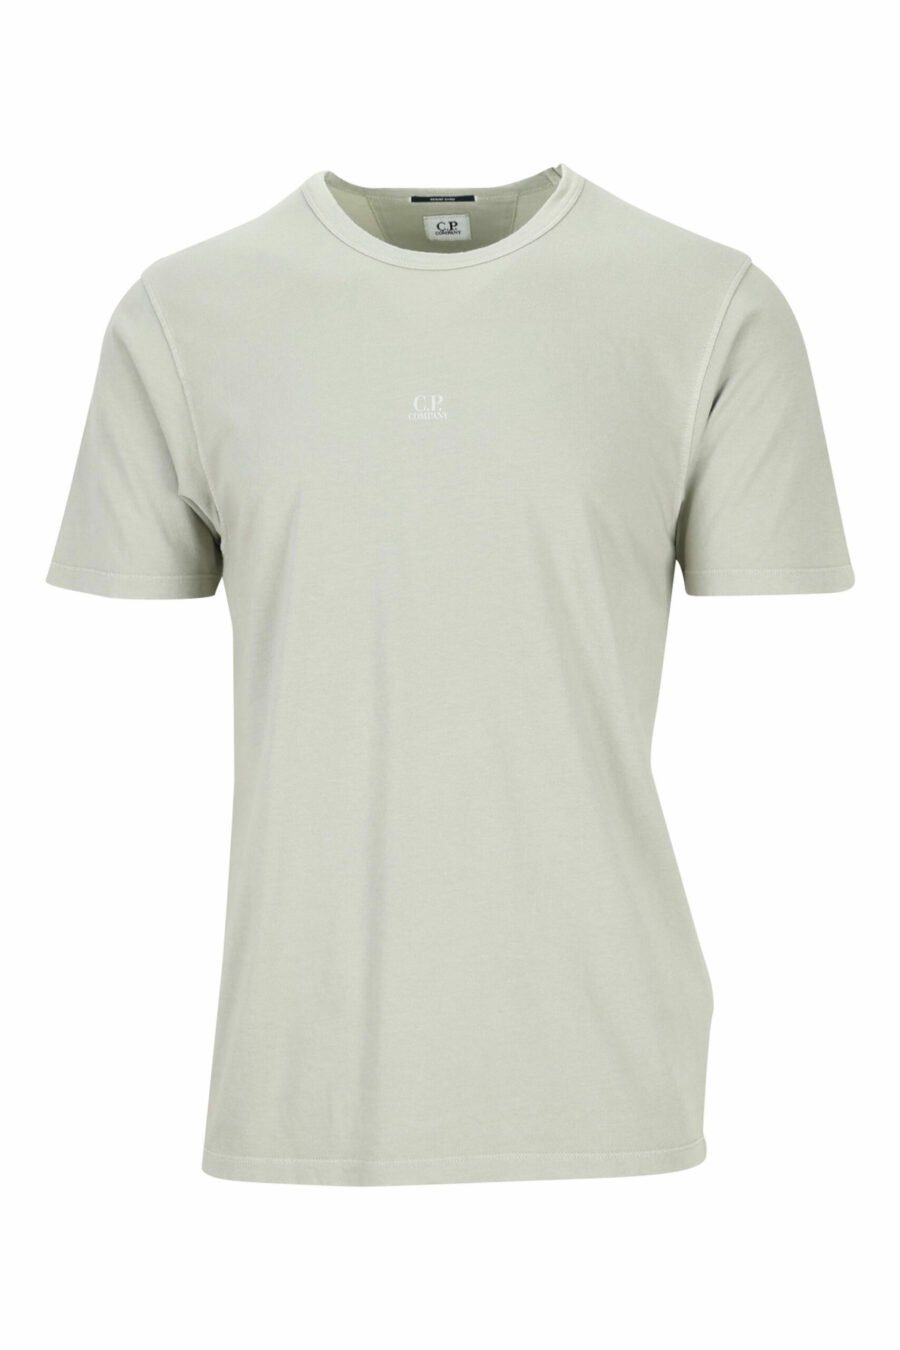 Beigefarbenes T-Shirt mit zentriertem Mini-Logo - 7620943594454 skaliert